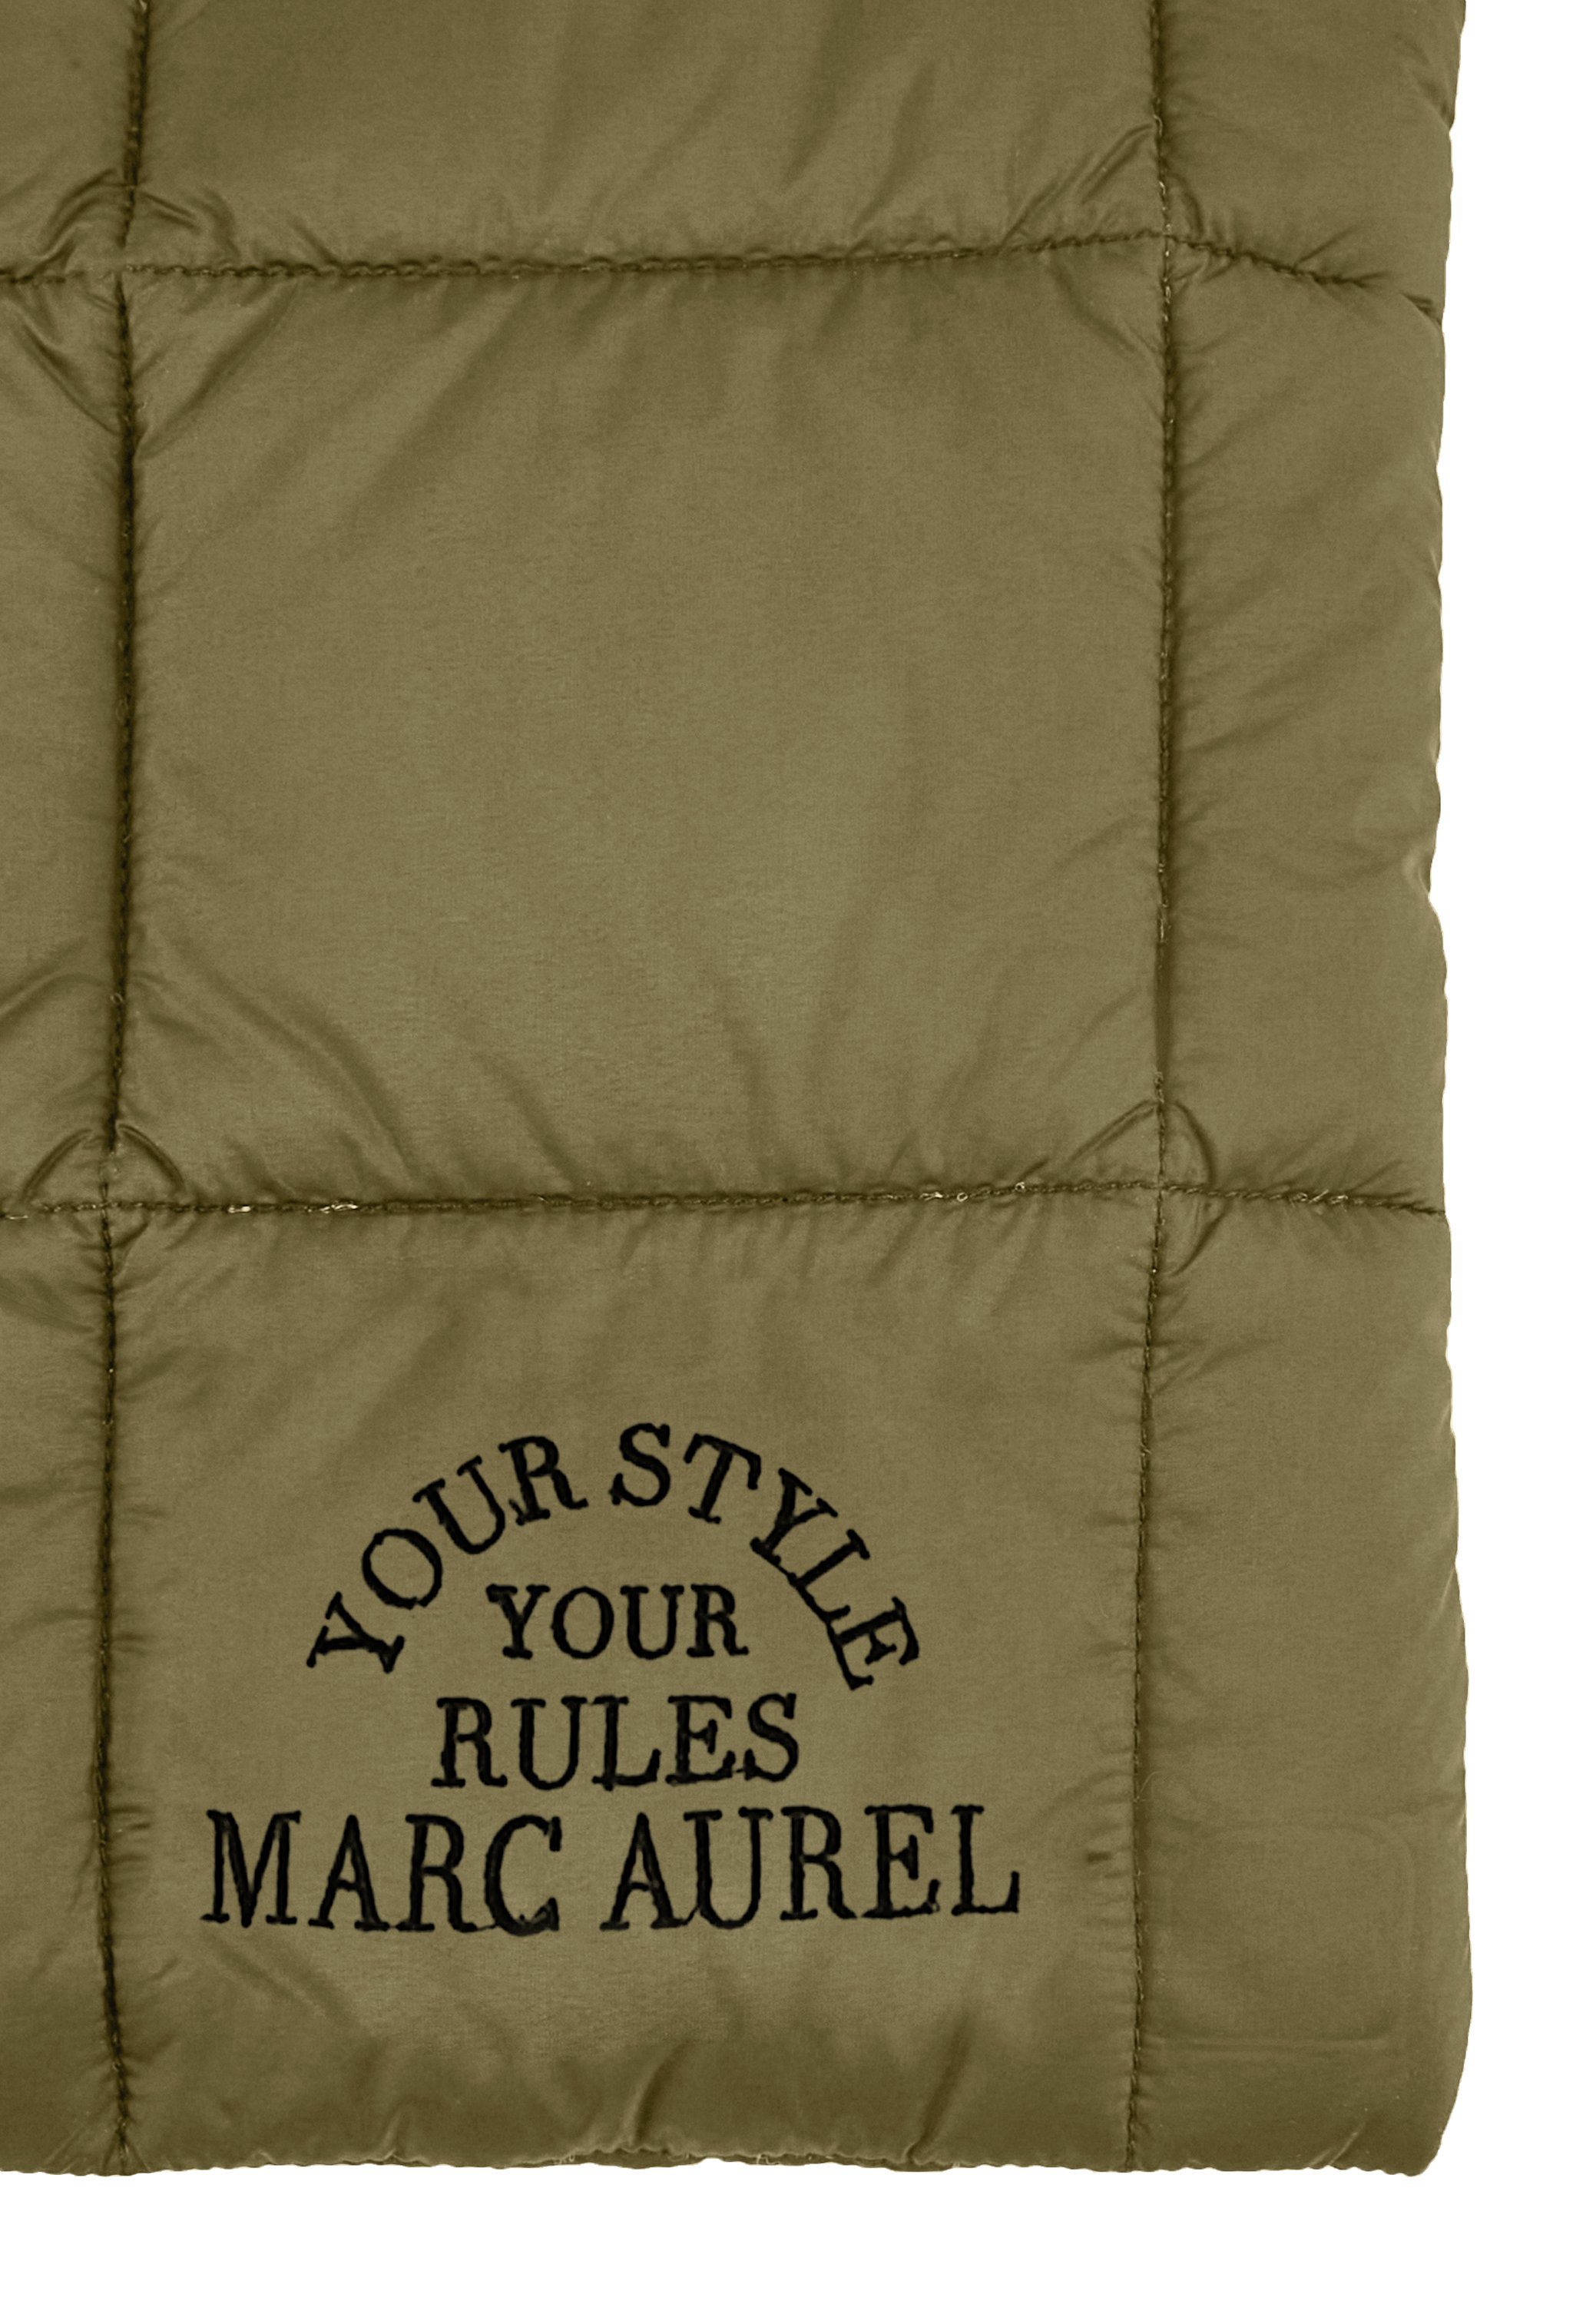 AUREL Puffer-Optik khaki Handtasche, MARC in